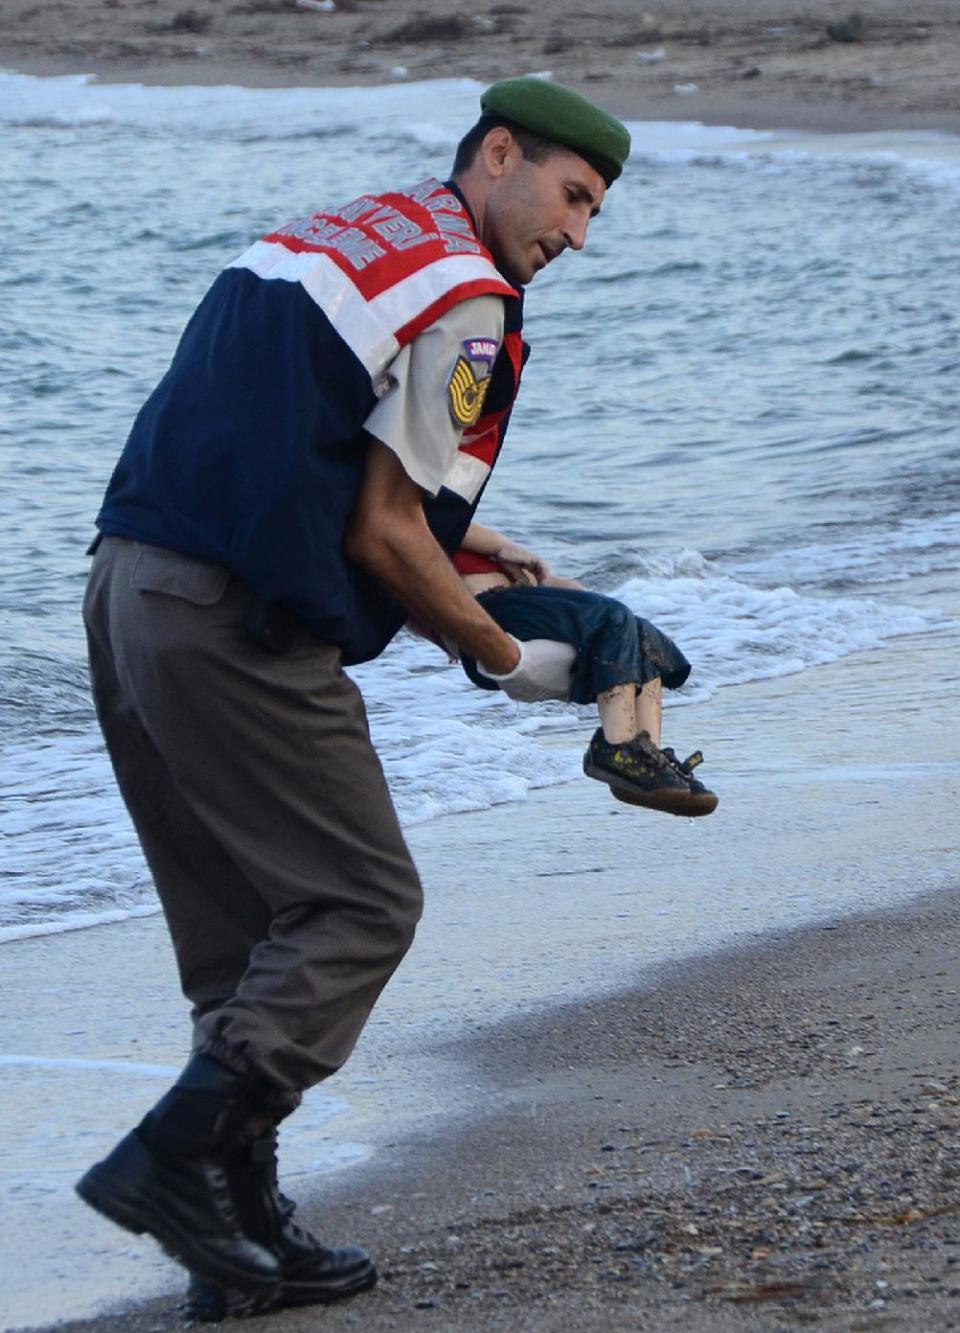 Un miembro de la policía turca recoge el cuerpo del niño sirio de 3 años ahogado, en una playa de Bodrum (Turquía) el 2 de septiembre de 2015 (Dogan News Agency/AFP | Str)